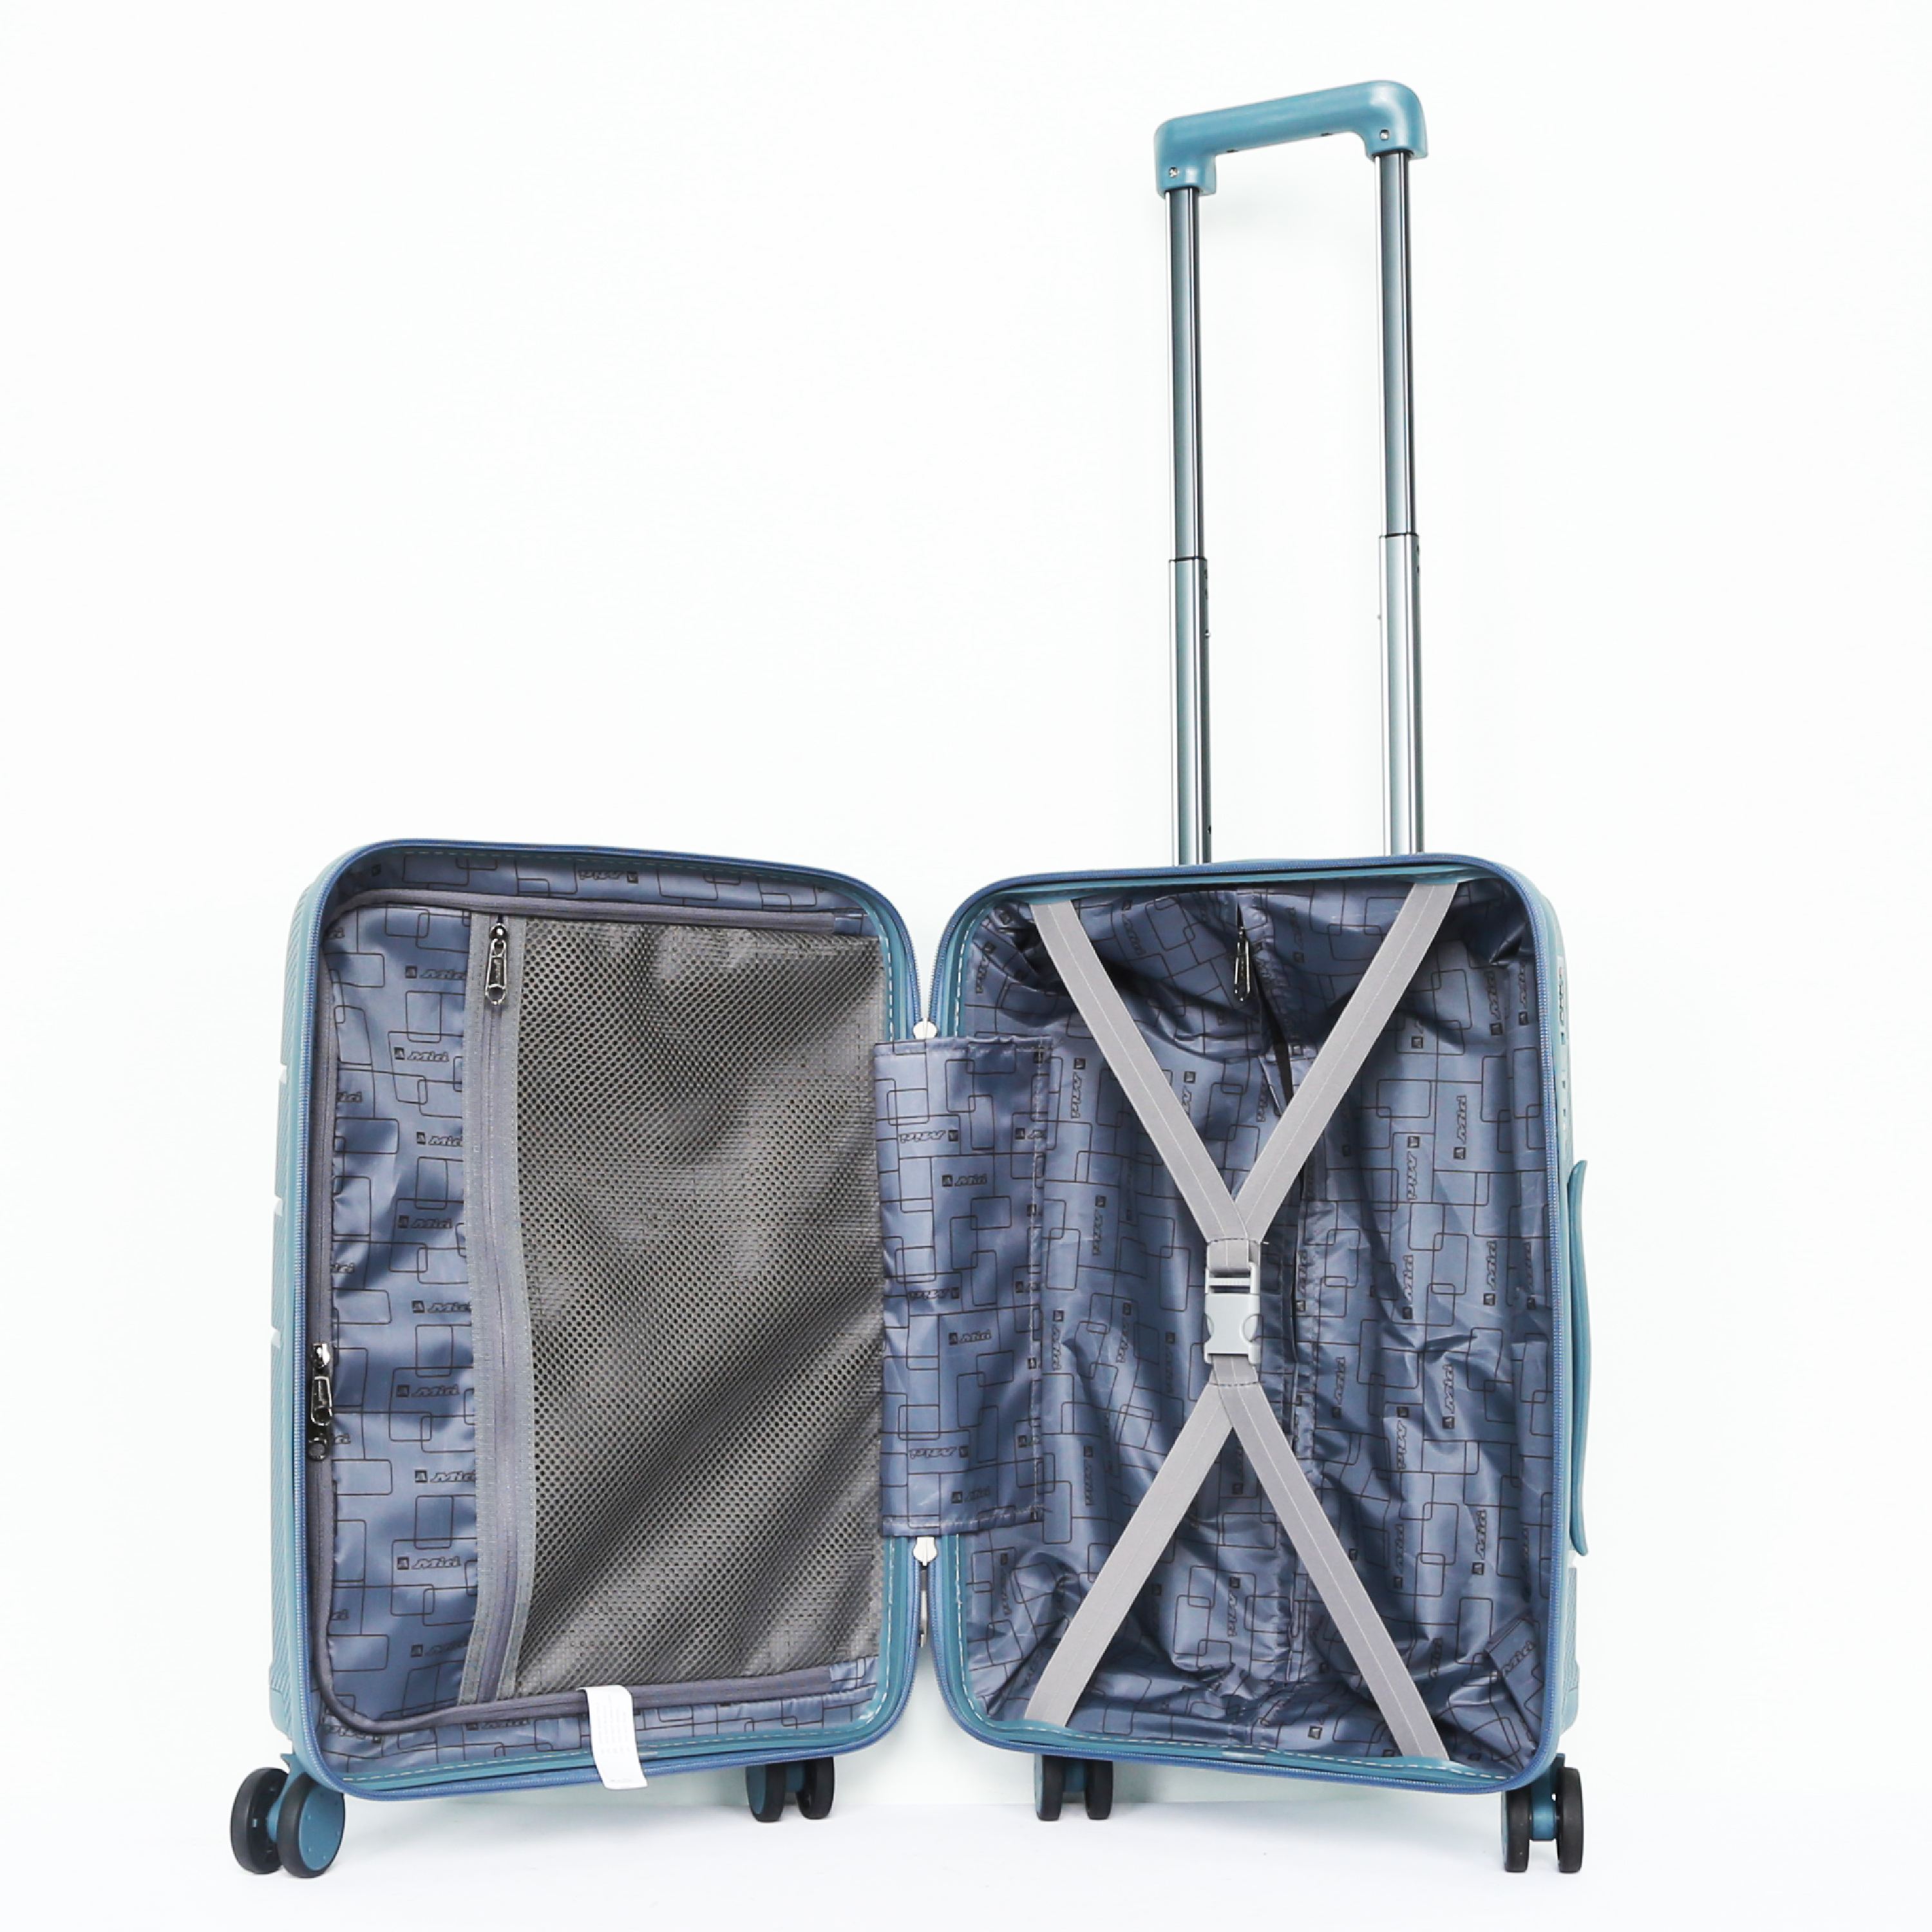 Vali kéo du lịch Miti VL513049 nhựa 20 inch hành lý xách tay bảo hành 12 tháng